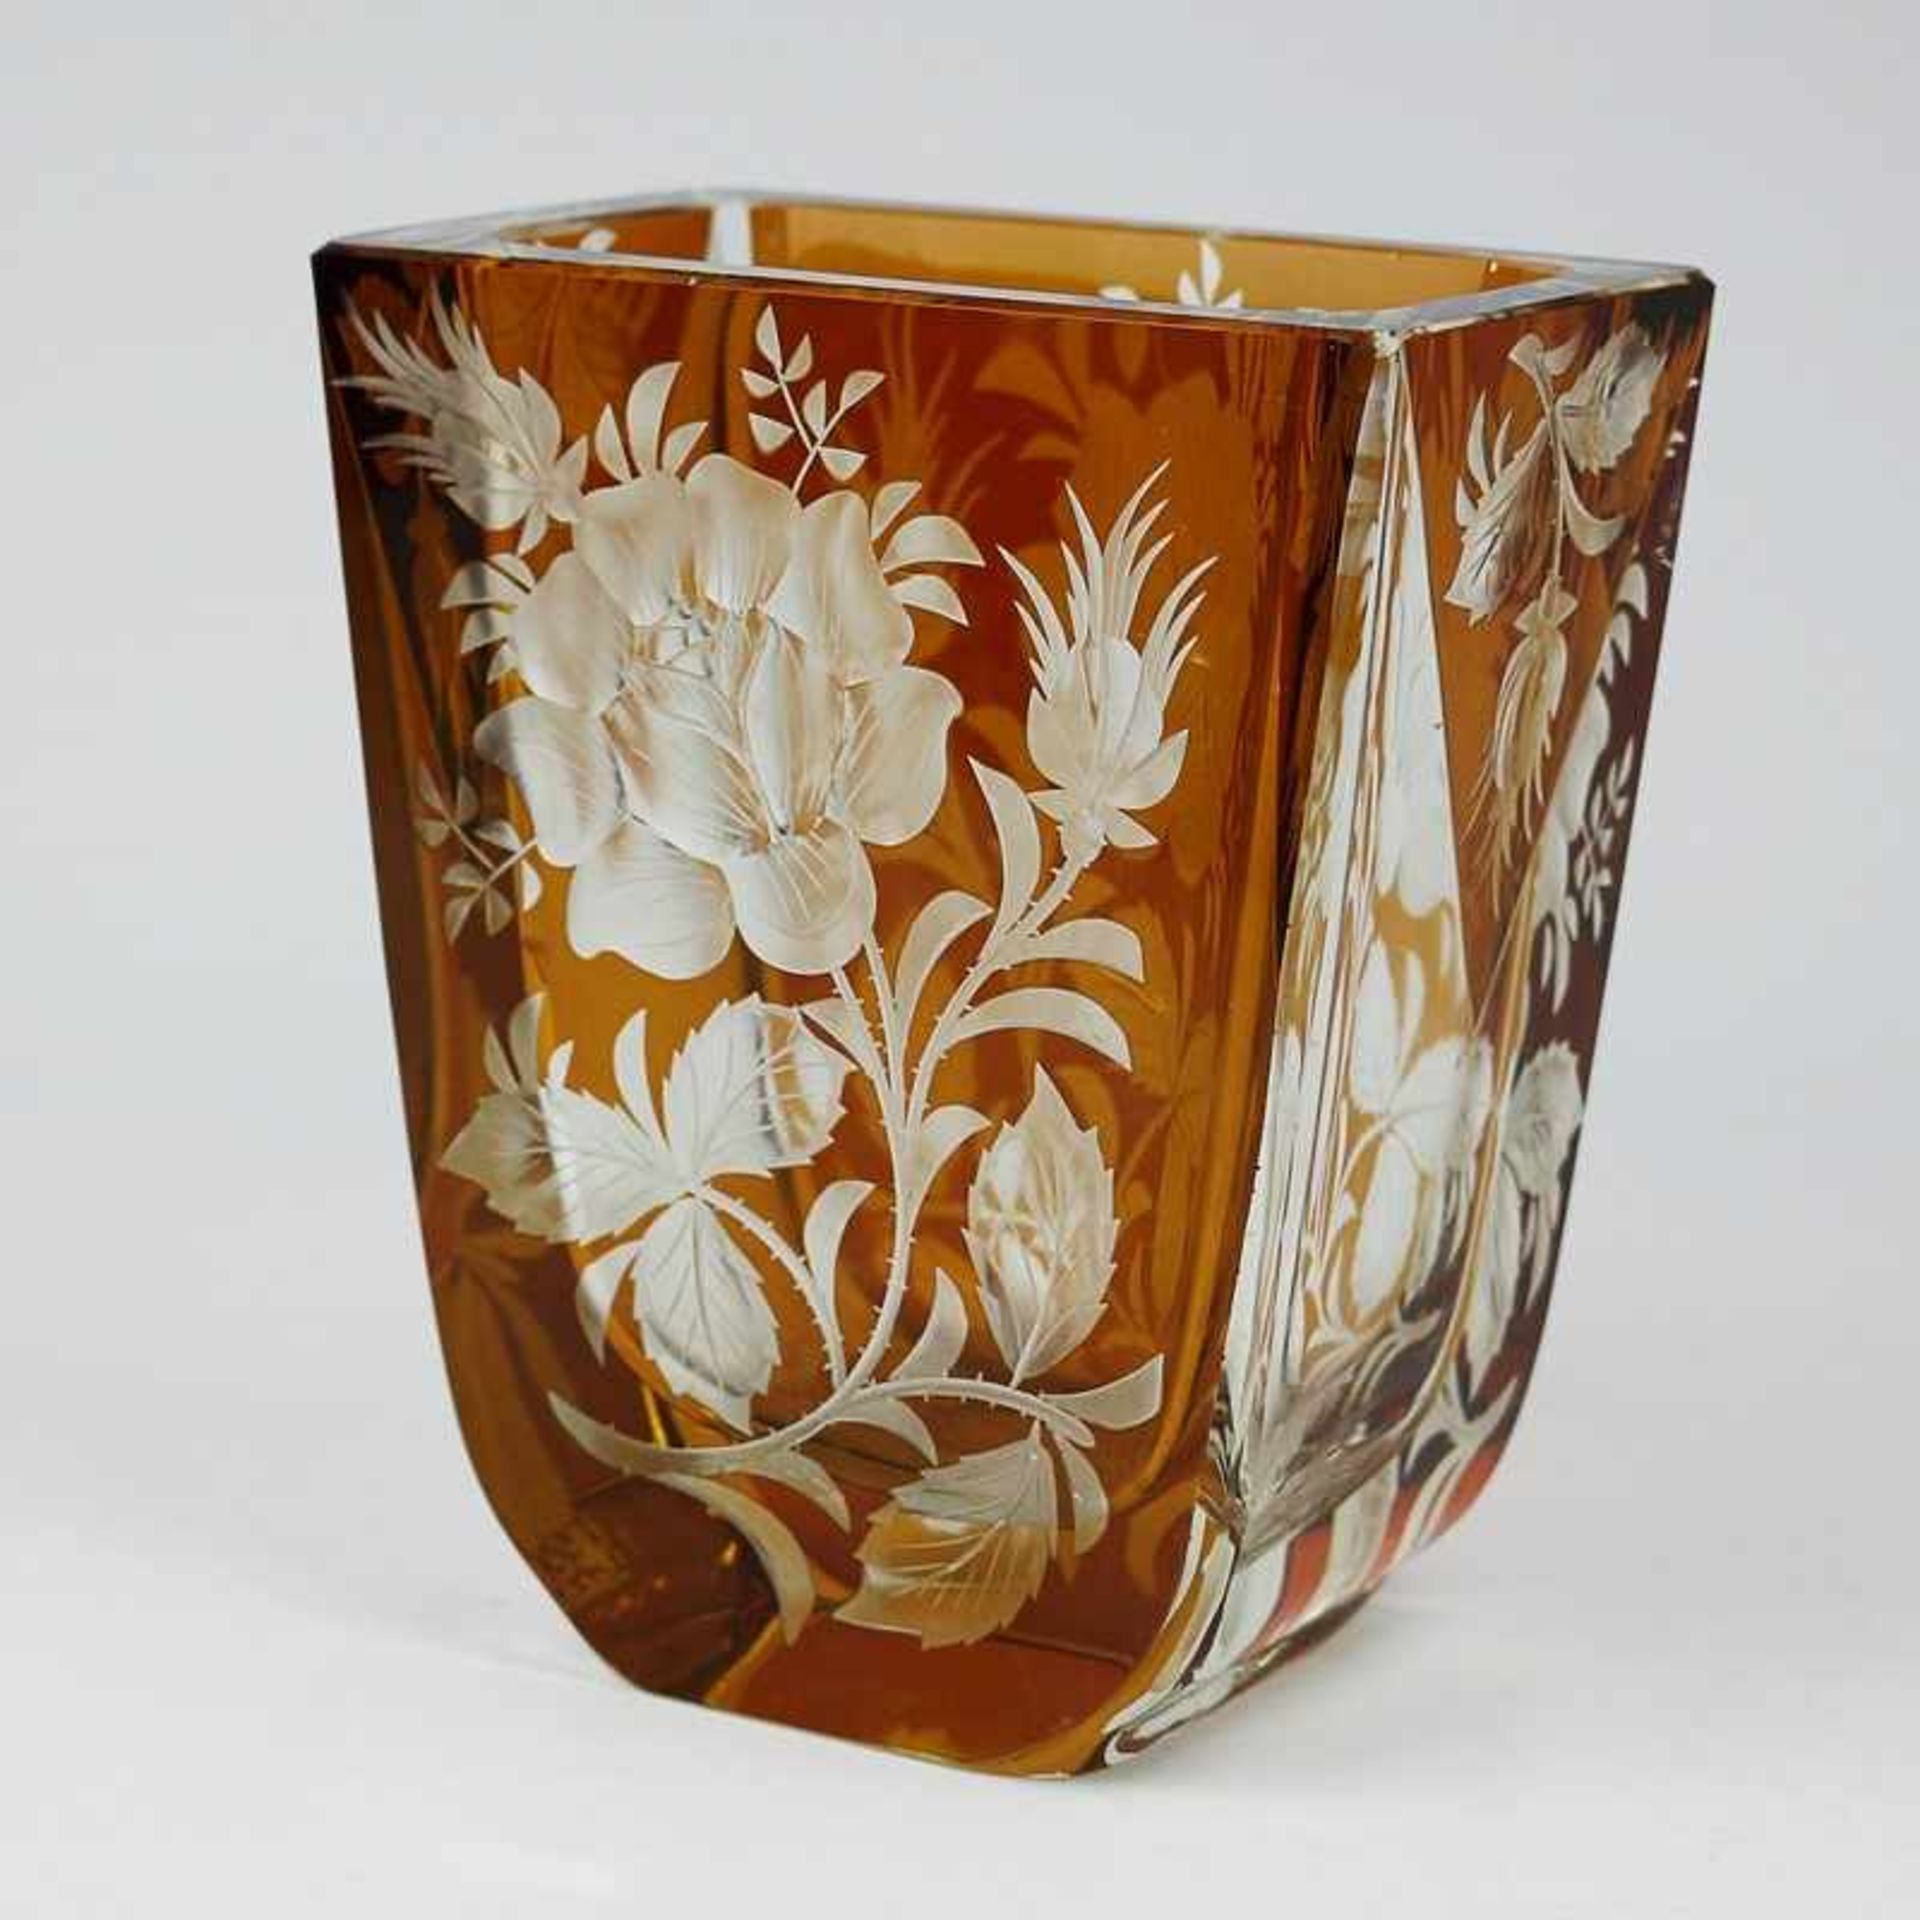 Vase farbloses Glas, quadratischer Stand, konischer Korpus, geschliffener Mündungsrand, umlaufend